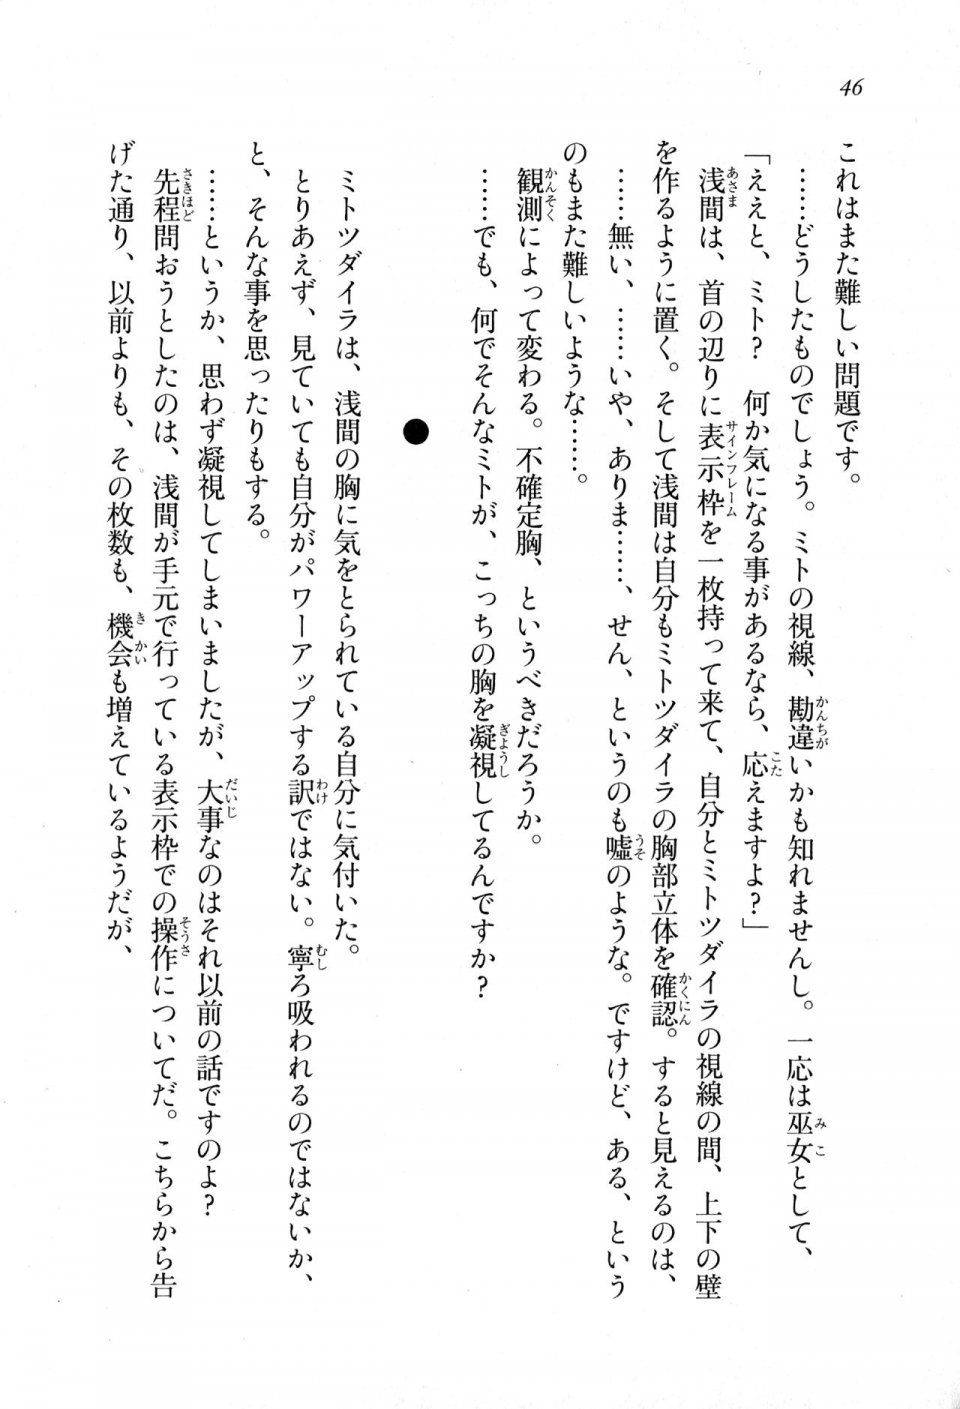 Kyoukai Senjou no Horizon LN Sidestory Vol 1 - Photo #44